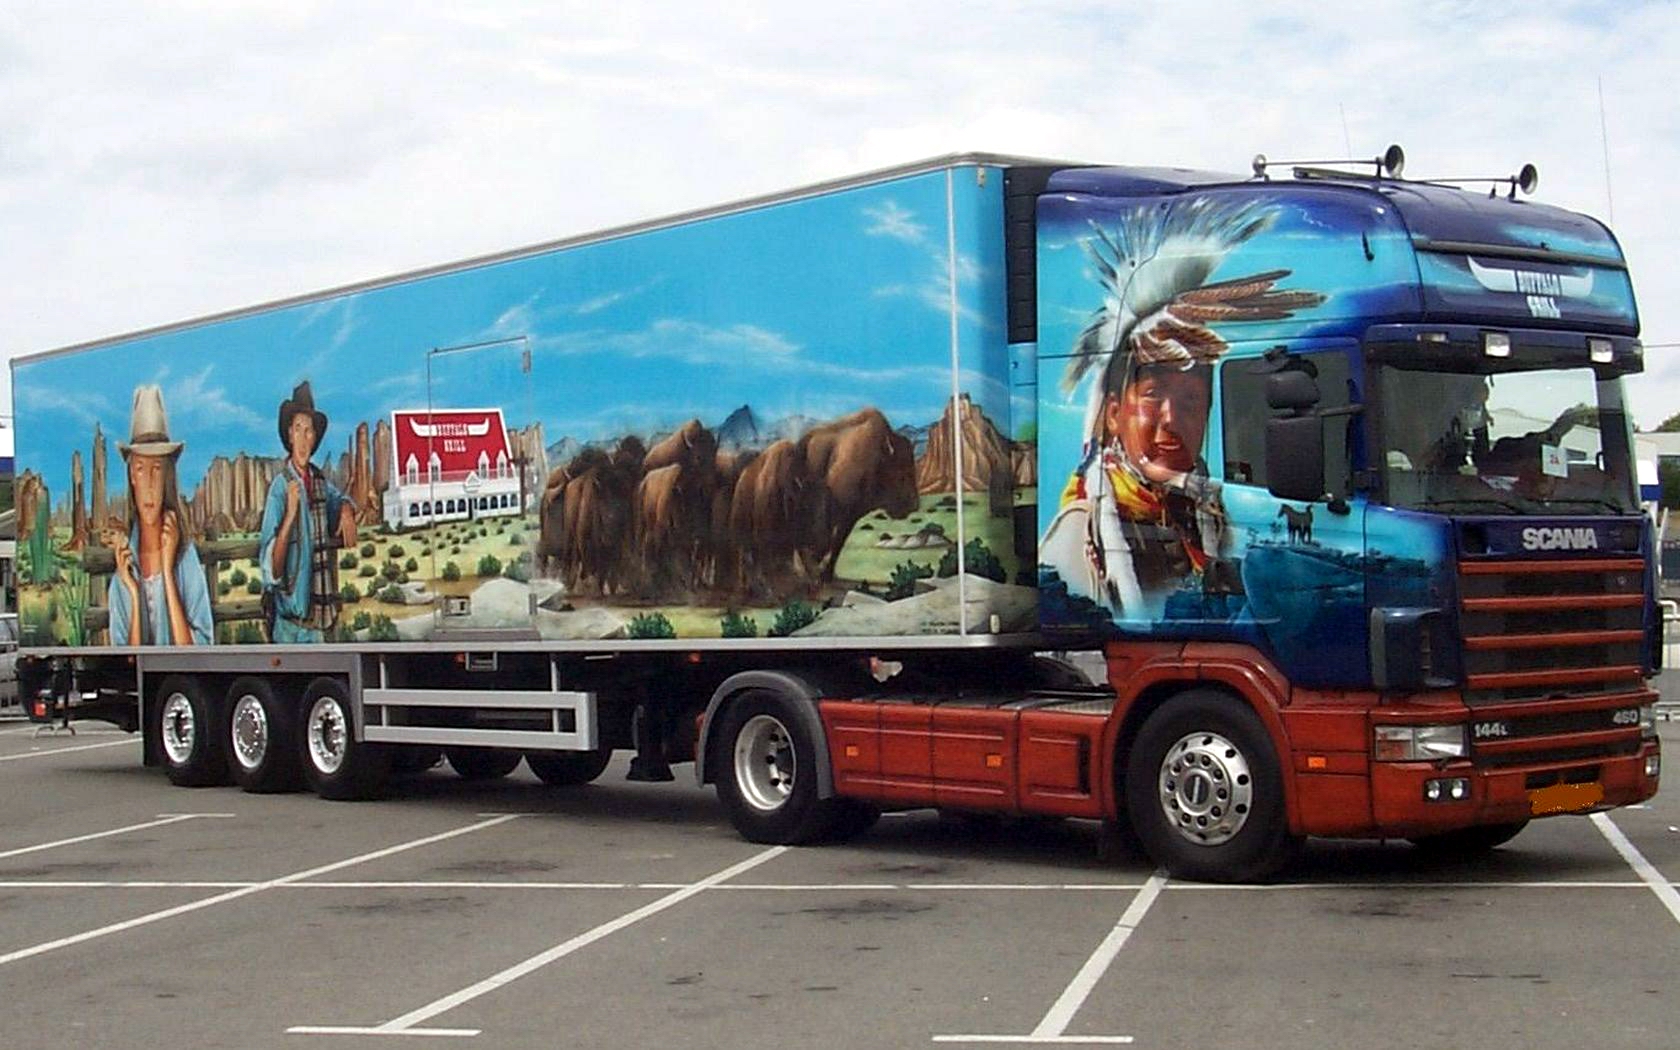 Download HQ Trucks wallpaper / Vehicles / 1680x1050